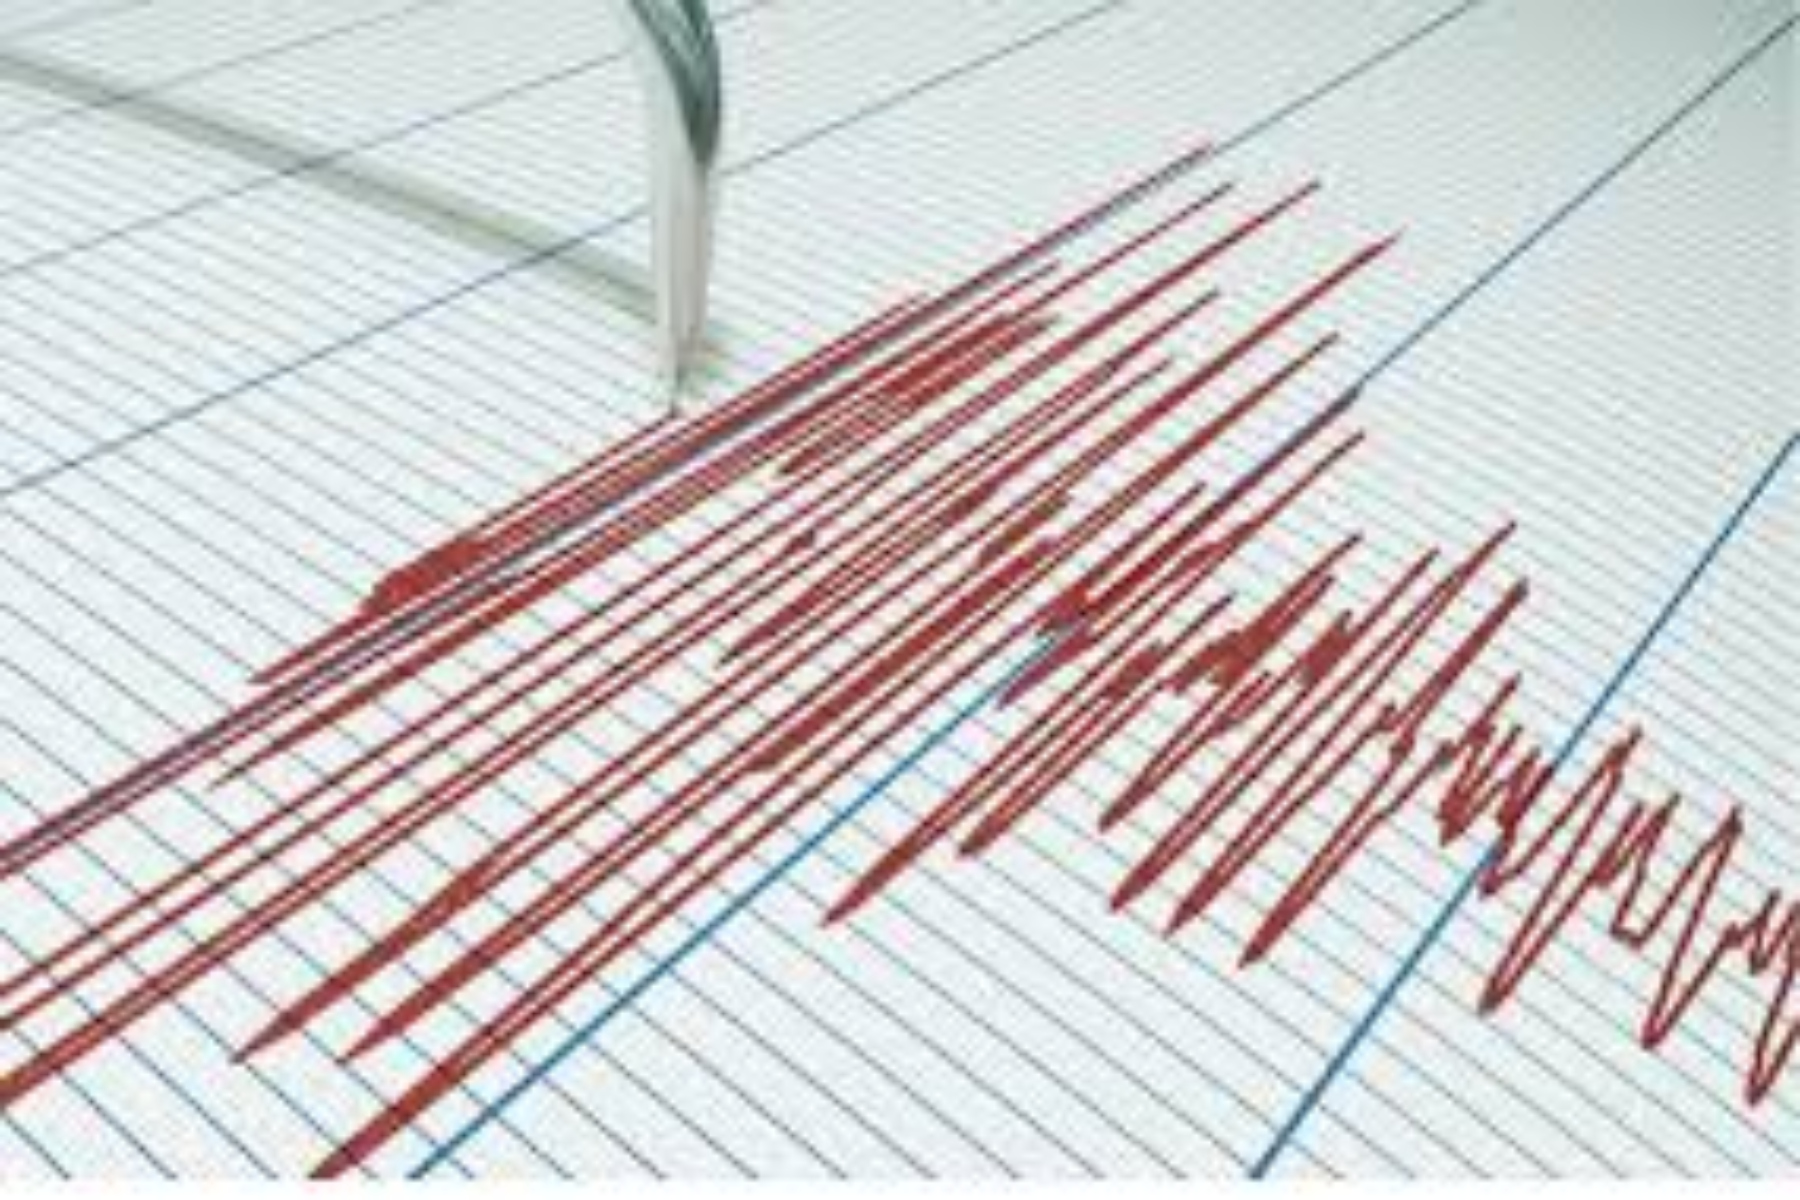 Σεισμός σήμερα: Σεισμική δόνηση 3,8 ρίχτερ κοντά στον Τύρναβο